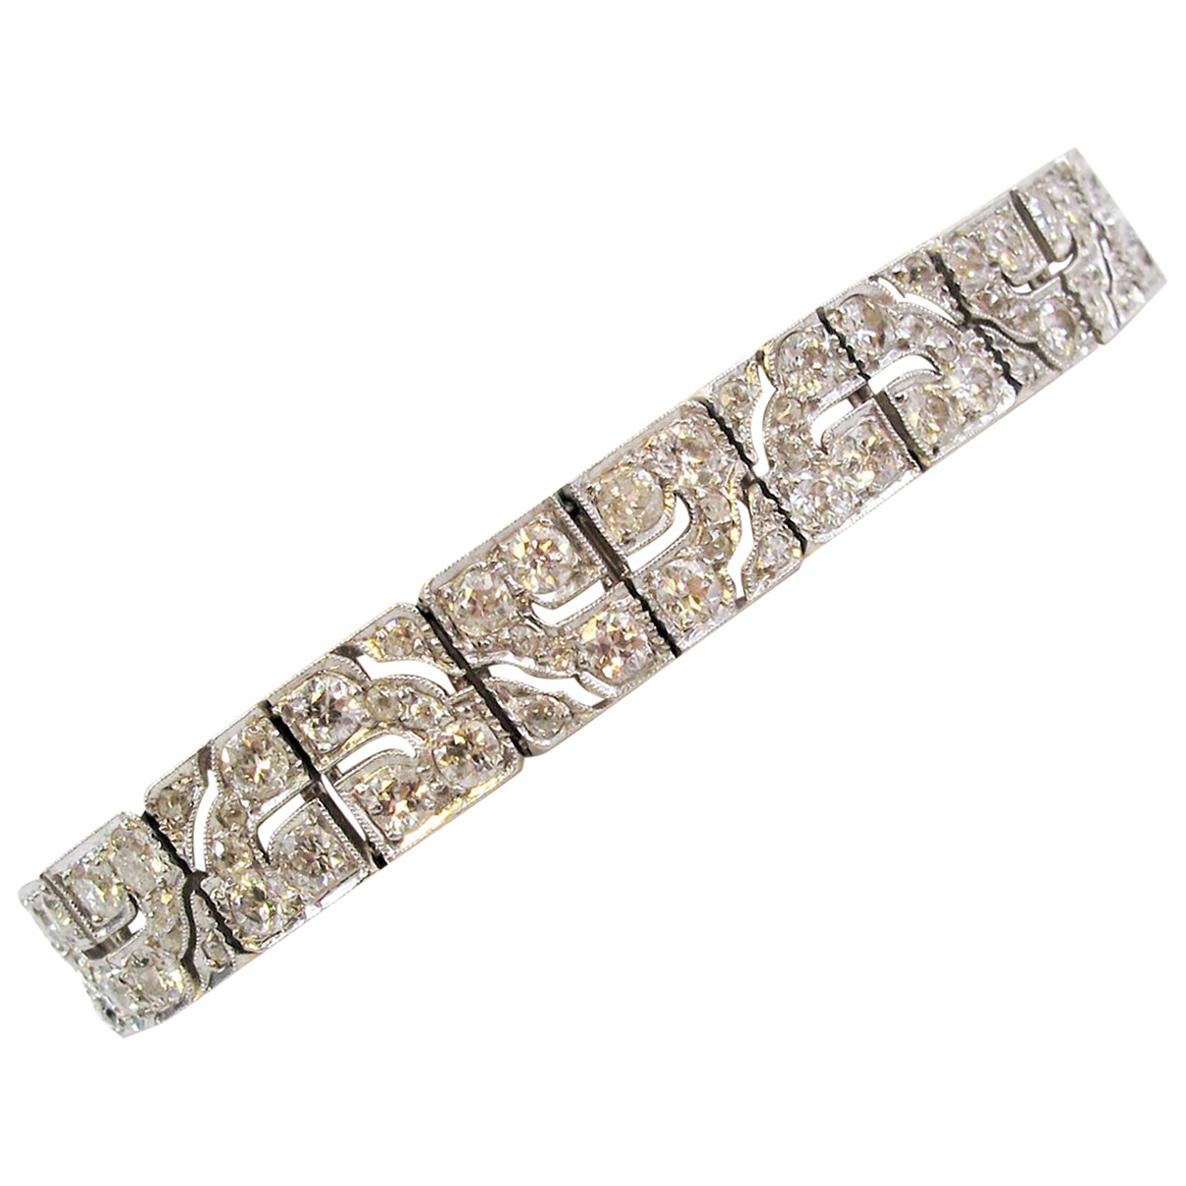 Art Deco Diamond Bracelet 8.40 Carats Old European Cut Diamonds Geometric Design 2